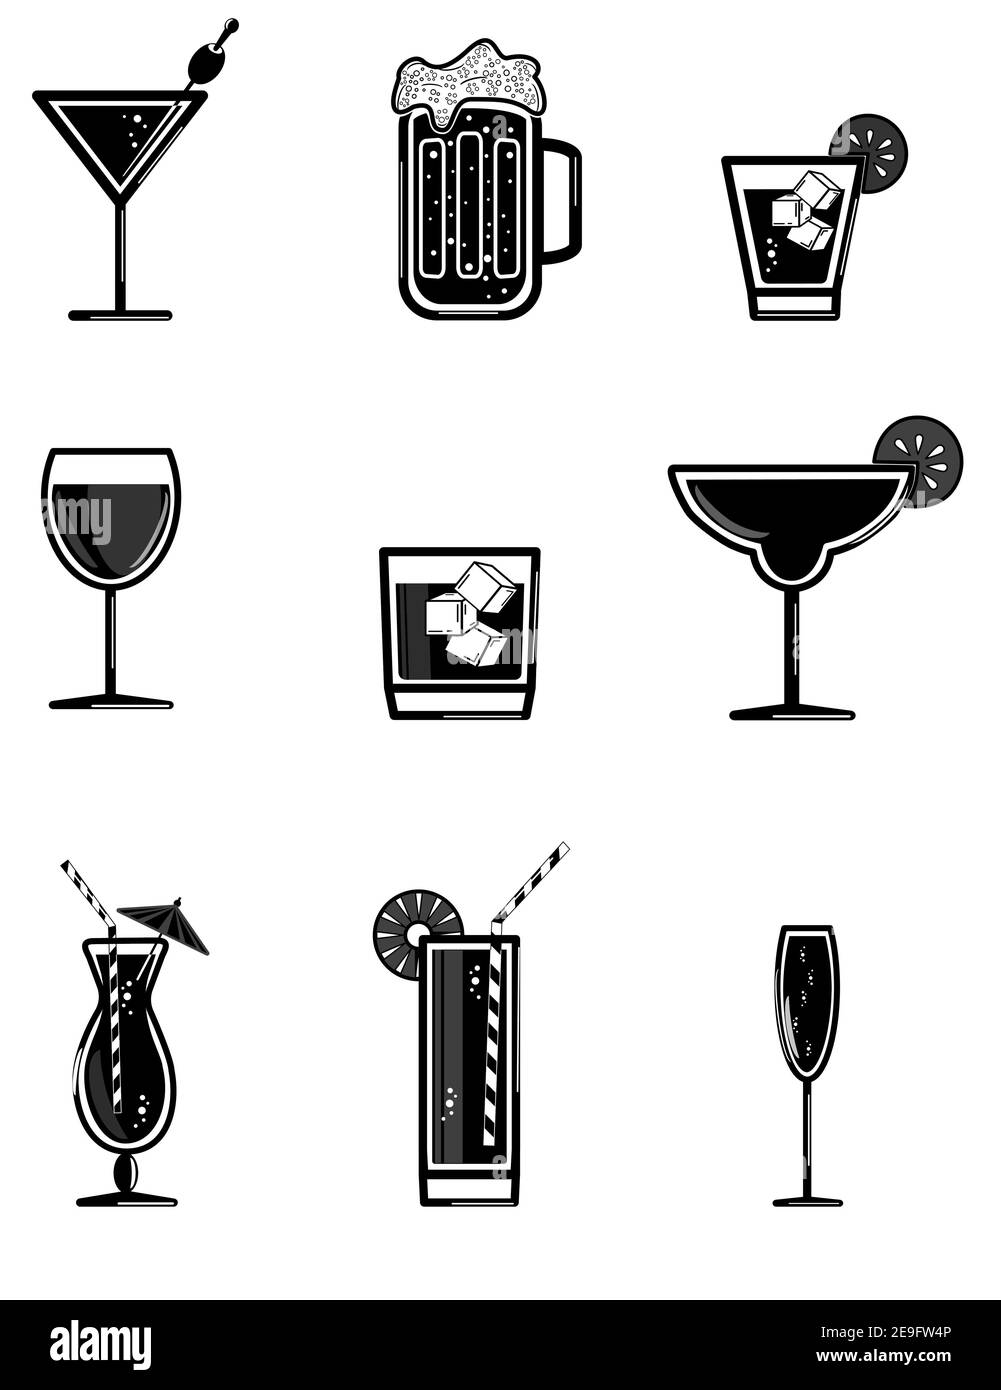 Ristorante e bar immagine vettoriale di bevande alcoliche. Illustrazione Vettoriale